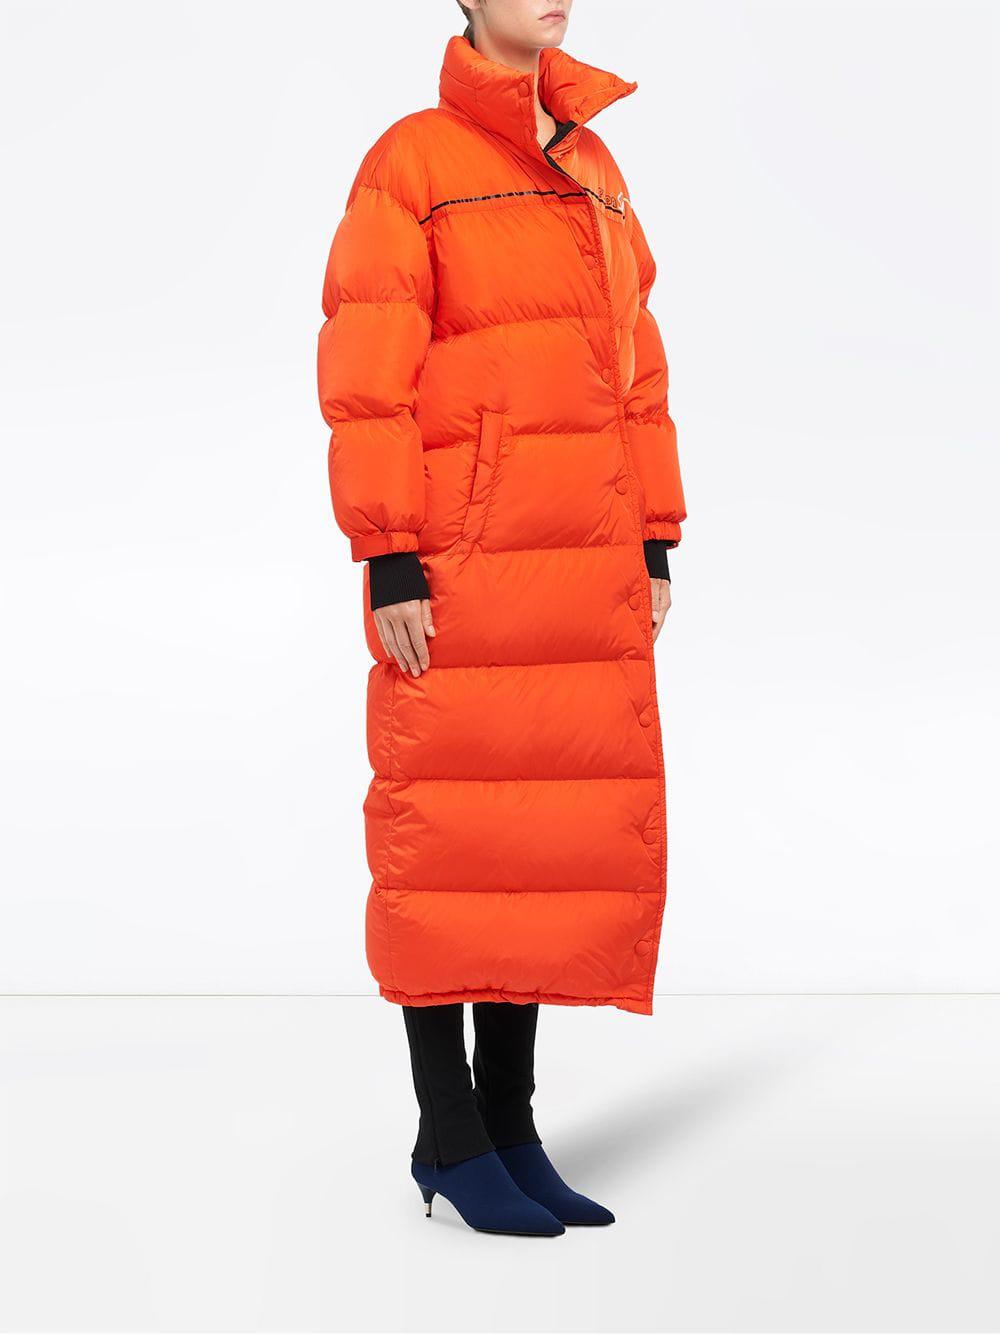 Prada Synthetic Puffer Coat in Bright Orange (Orange) - Lyst